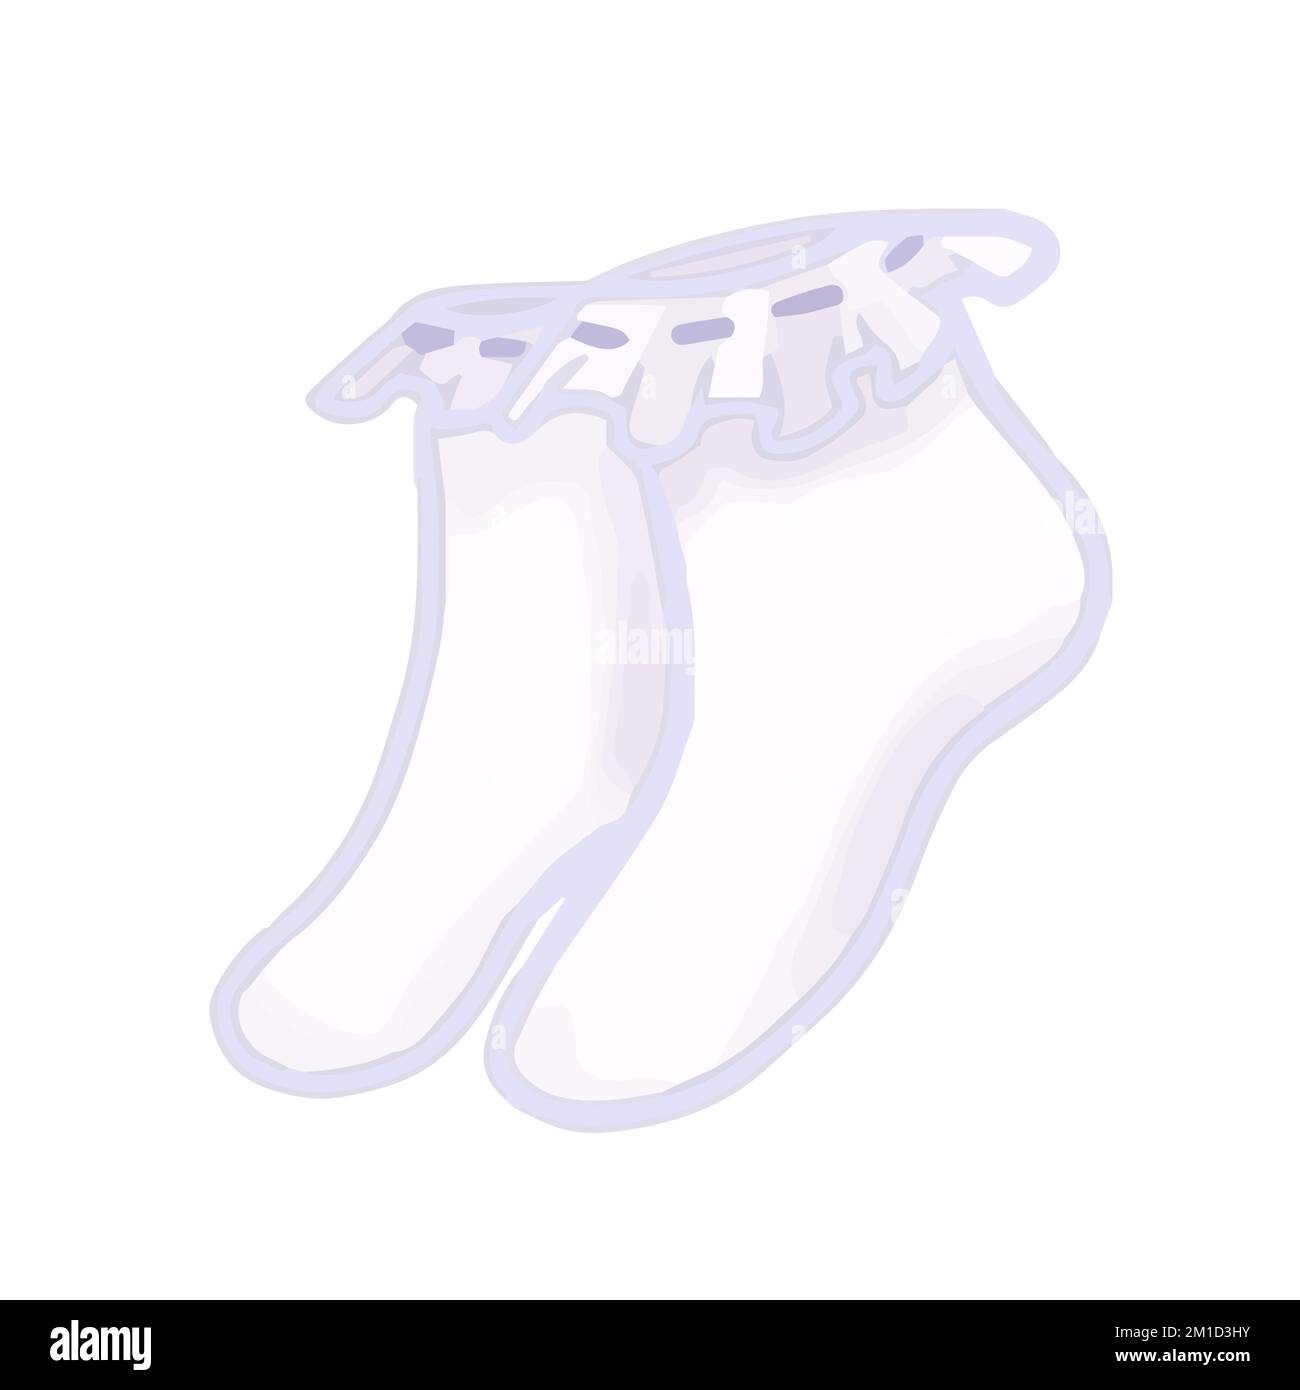 Dessin à la main joli clip isolé illustration d'une paire de chaussettes blanches à volants Illustration de Vecteur